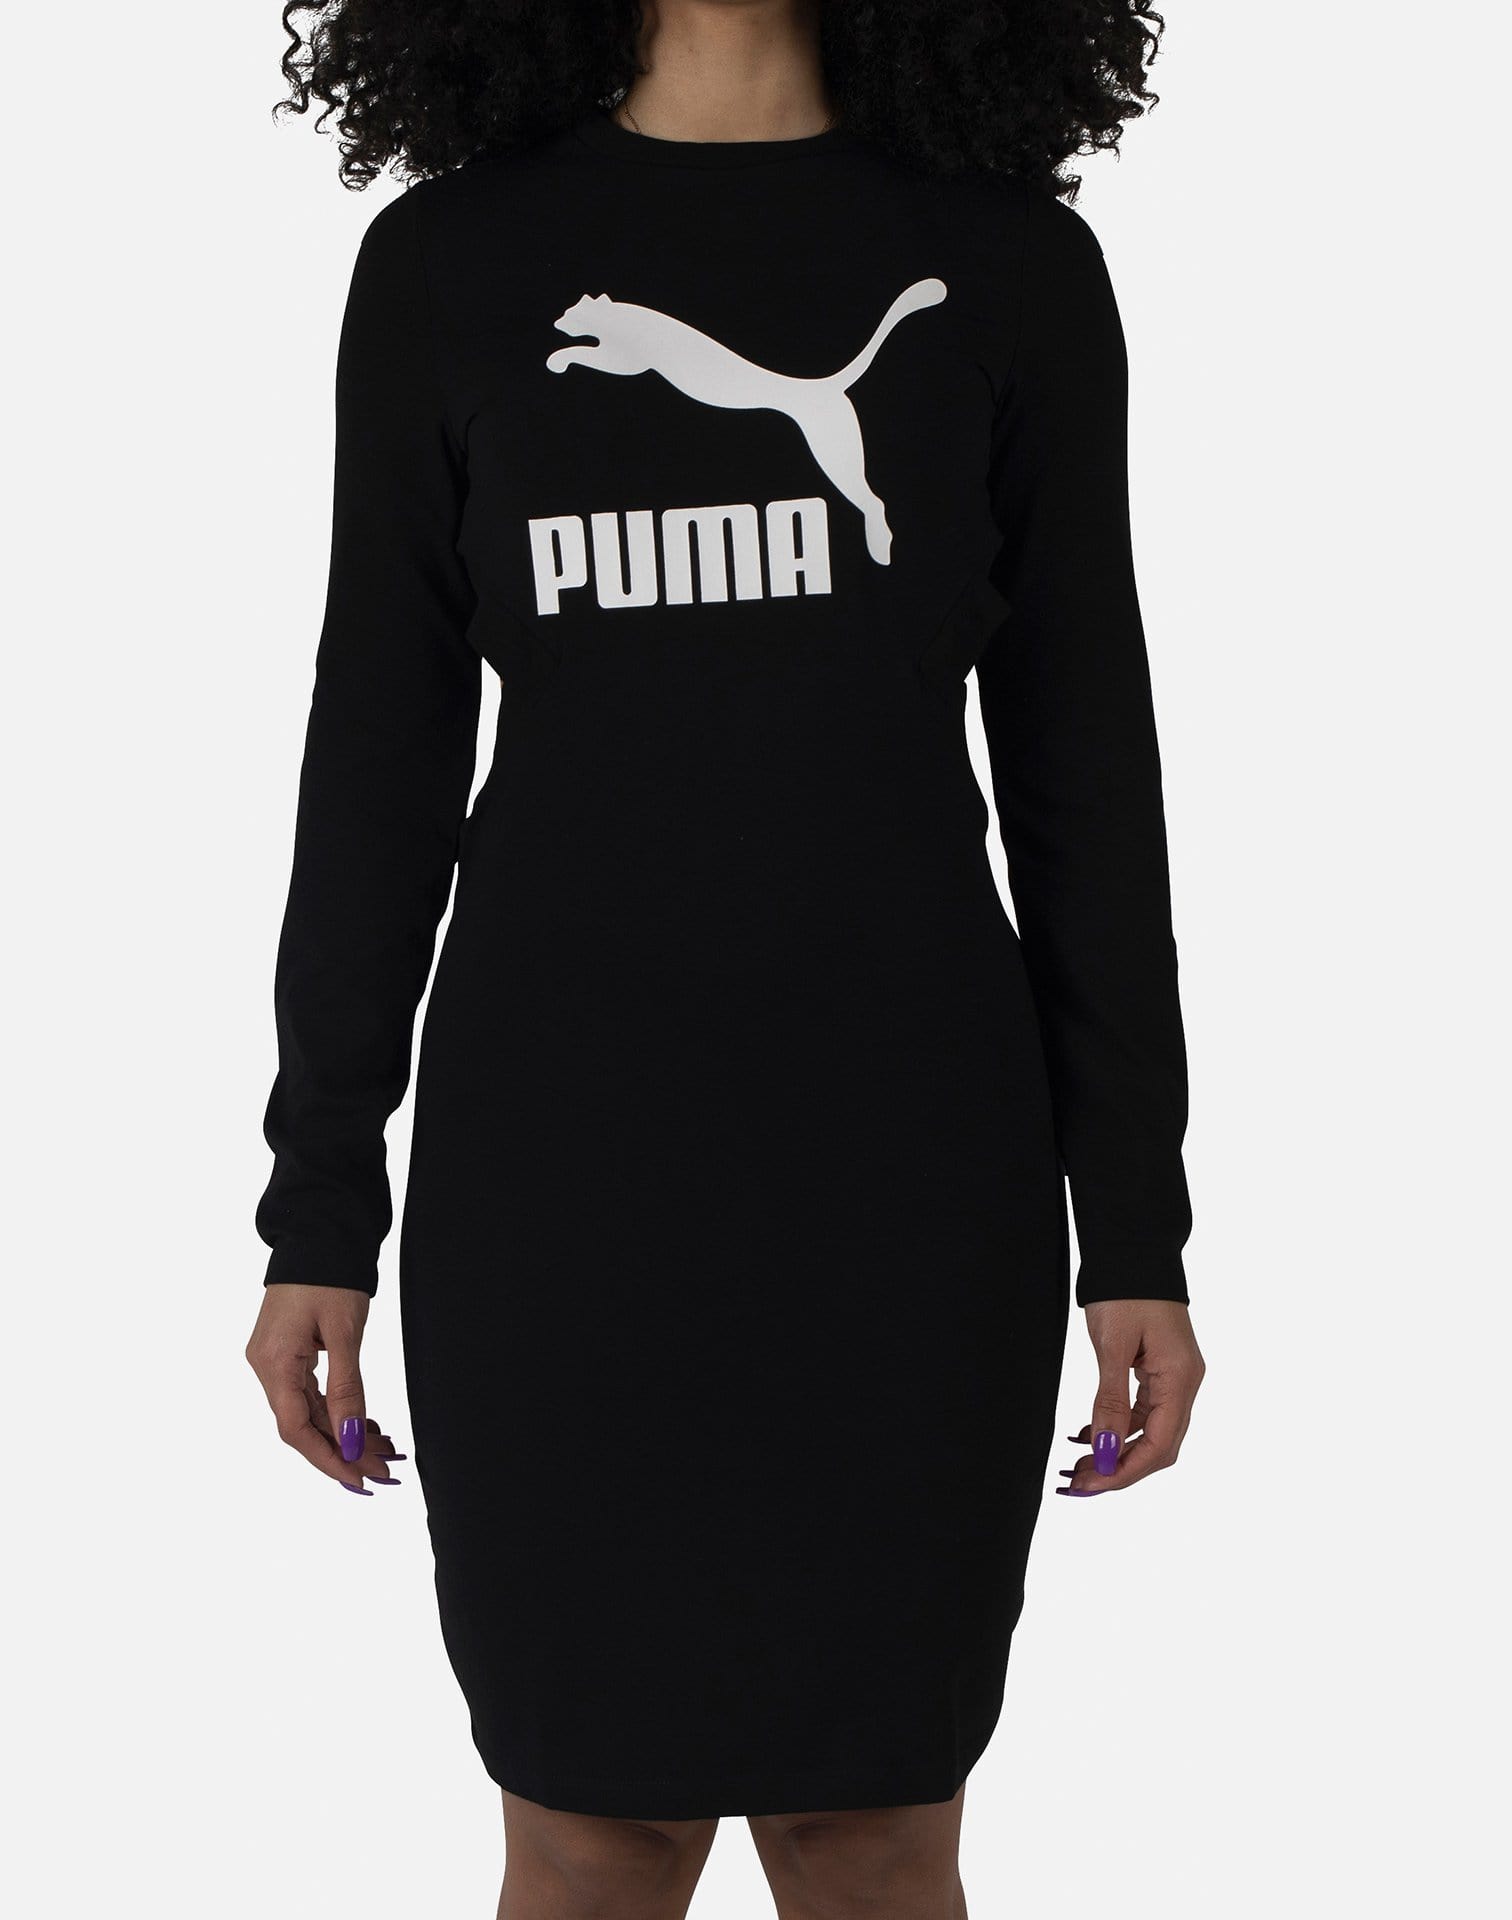 PUMA Women's Classics Logo Tight Dress